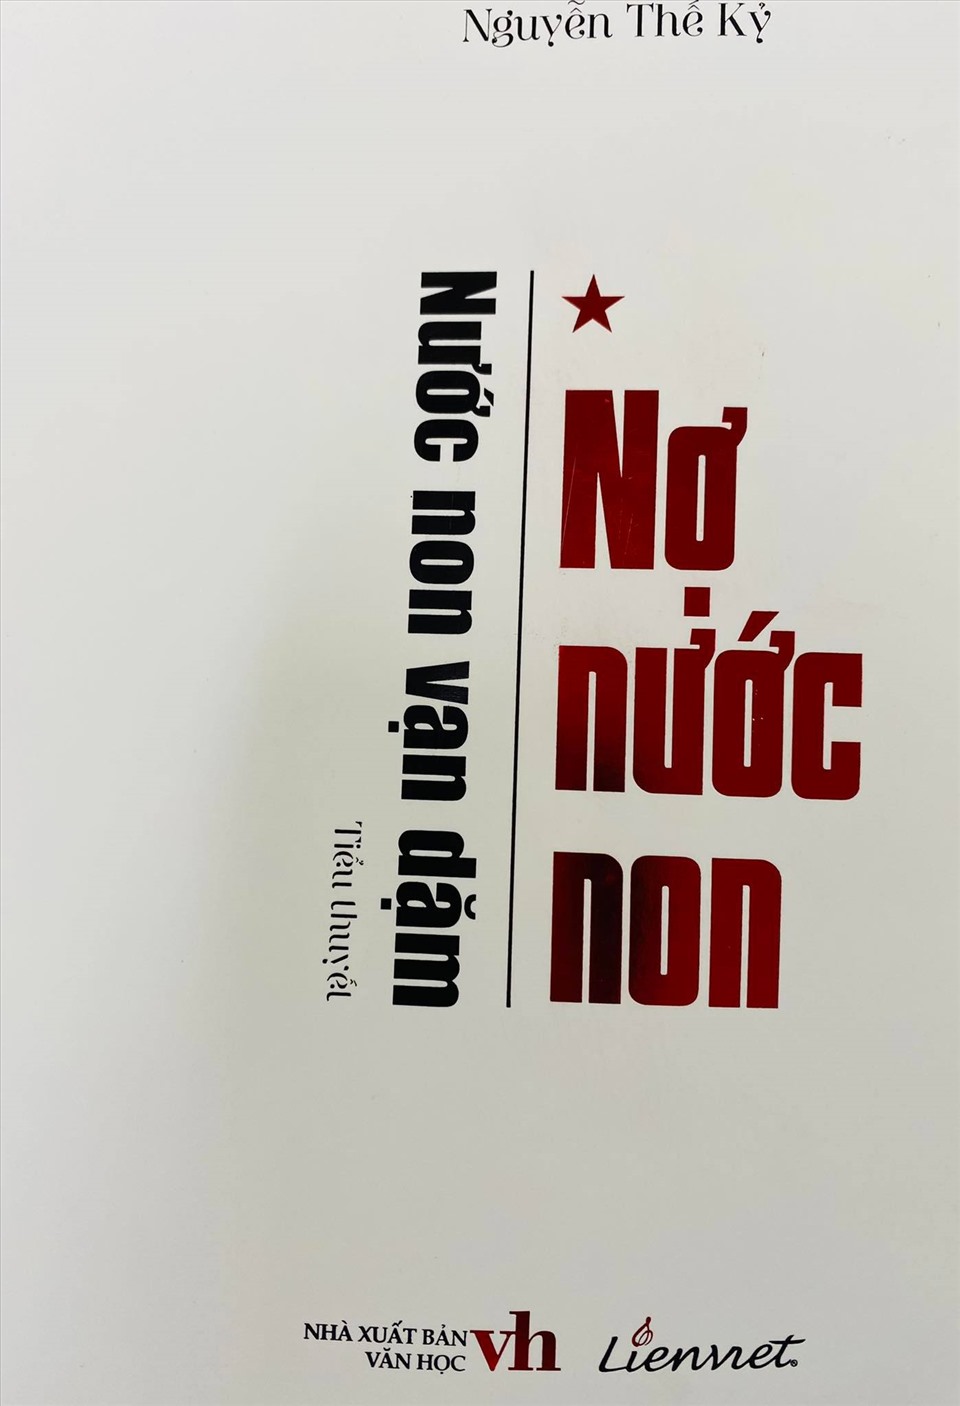 Cuốn tiểu thuyết “Nợ non nước” của nhà văn Nguyễn Thế Kỷ. Ảnh: Hiền Hương